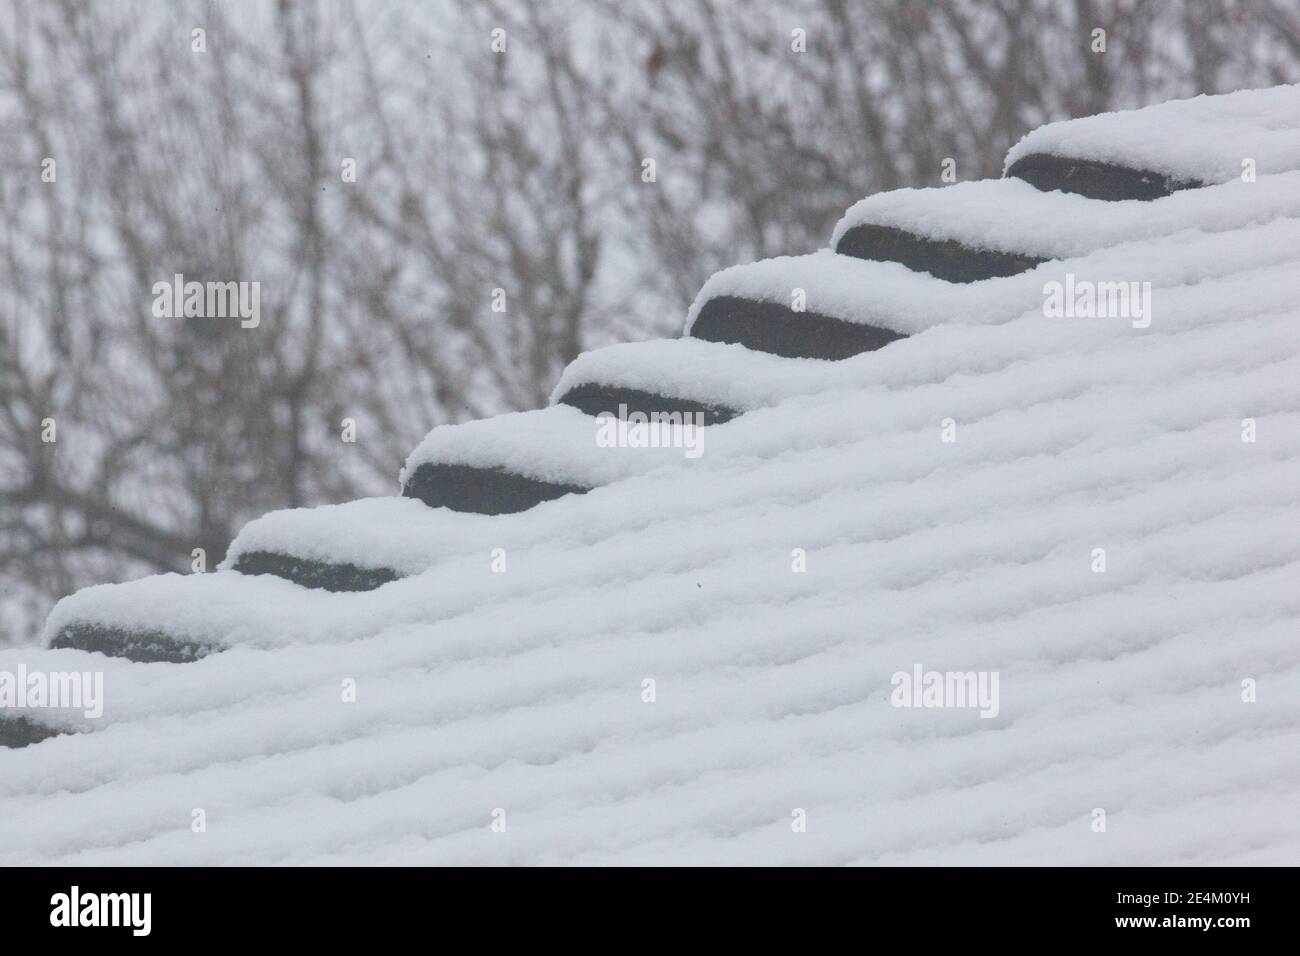 UK Weather, Londra, 24 gennaio 2021: Una rara nevicata ha raggiunto la capitale la domenica mattina, rivestendo alberi e ruscelli con circa 2 cm di neve nel corso di 2 ore. Anna Watson/Alamy Live News Foto Stock